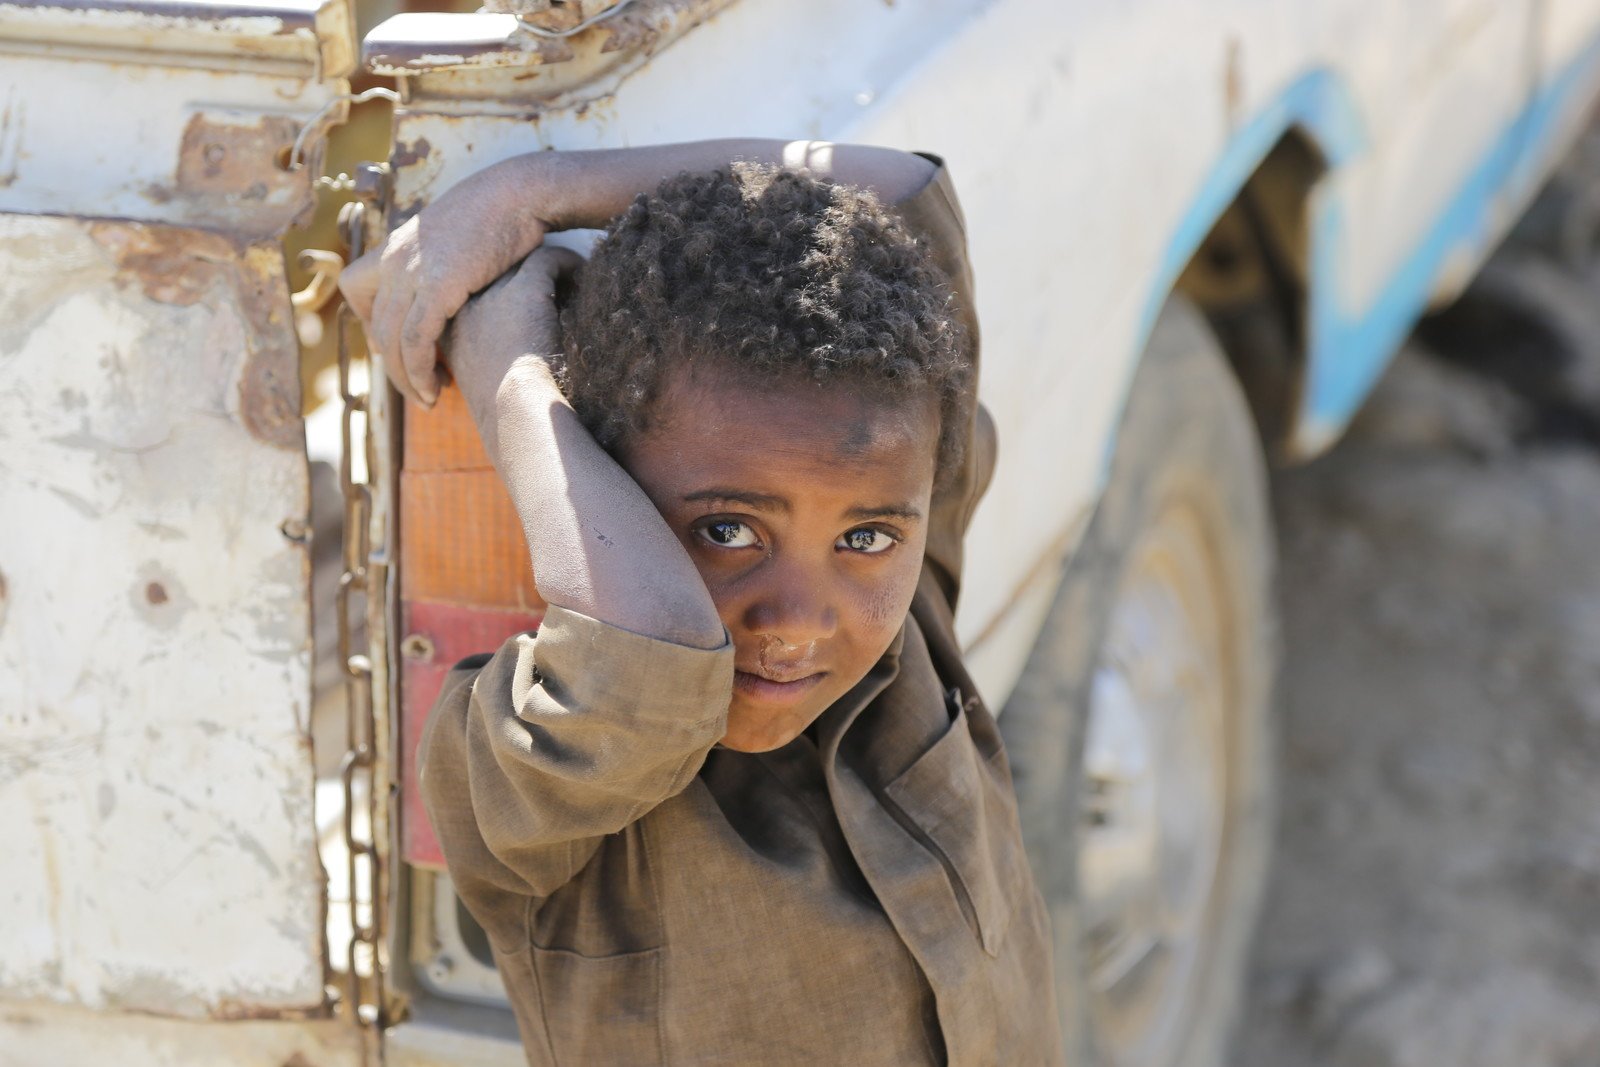 8歲的Bader(為保護兒童，名字經更改)因戰火和飢餓，被迫和家人離開Sa'ash地區，及後棲身於阿姆蘭省(Amran)胡特國內流離失所者營地(Huth IDP camp)。樂施會自2015年年底以來一直在營地提供人道援助，包括提供能安全飲用的食水。  樂施會在阿姆蘭省的衛生推廣以及公共衛生工作共支援了53,000人。